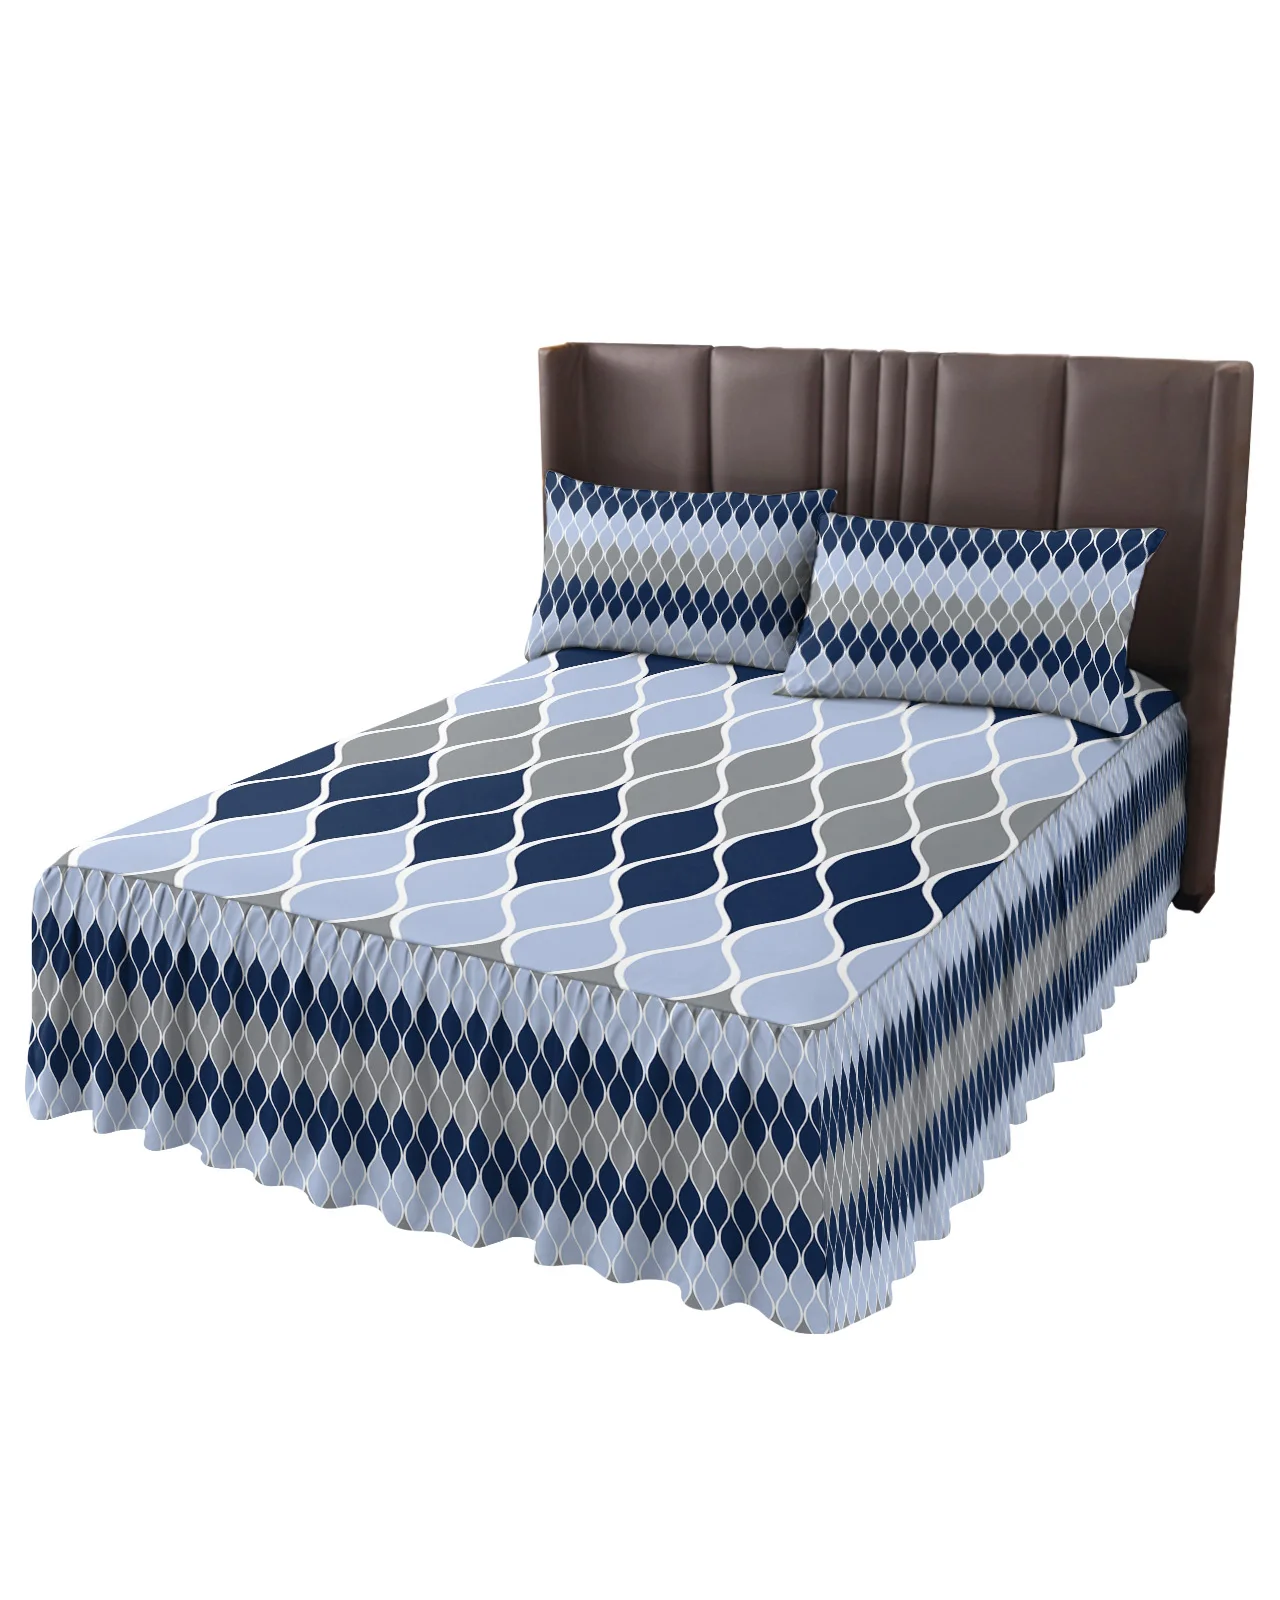 Геометрическая сине-серая средневековая юбка для кровати, Эластичное облегающее покрывало с наволочками, Наматрасник, Комплект постельных принадлежностей, простыня Изображение 1